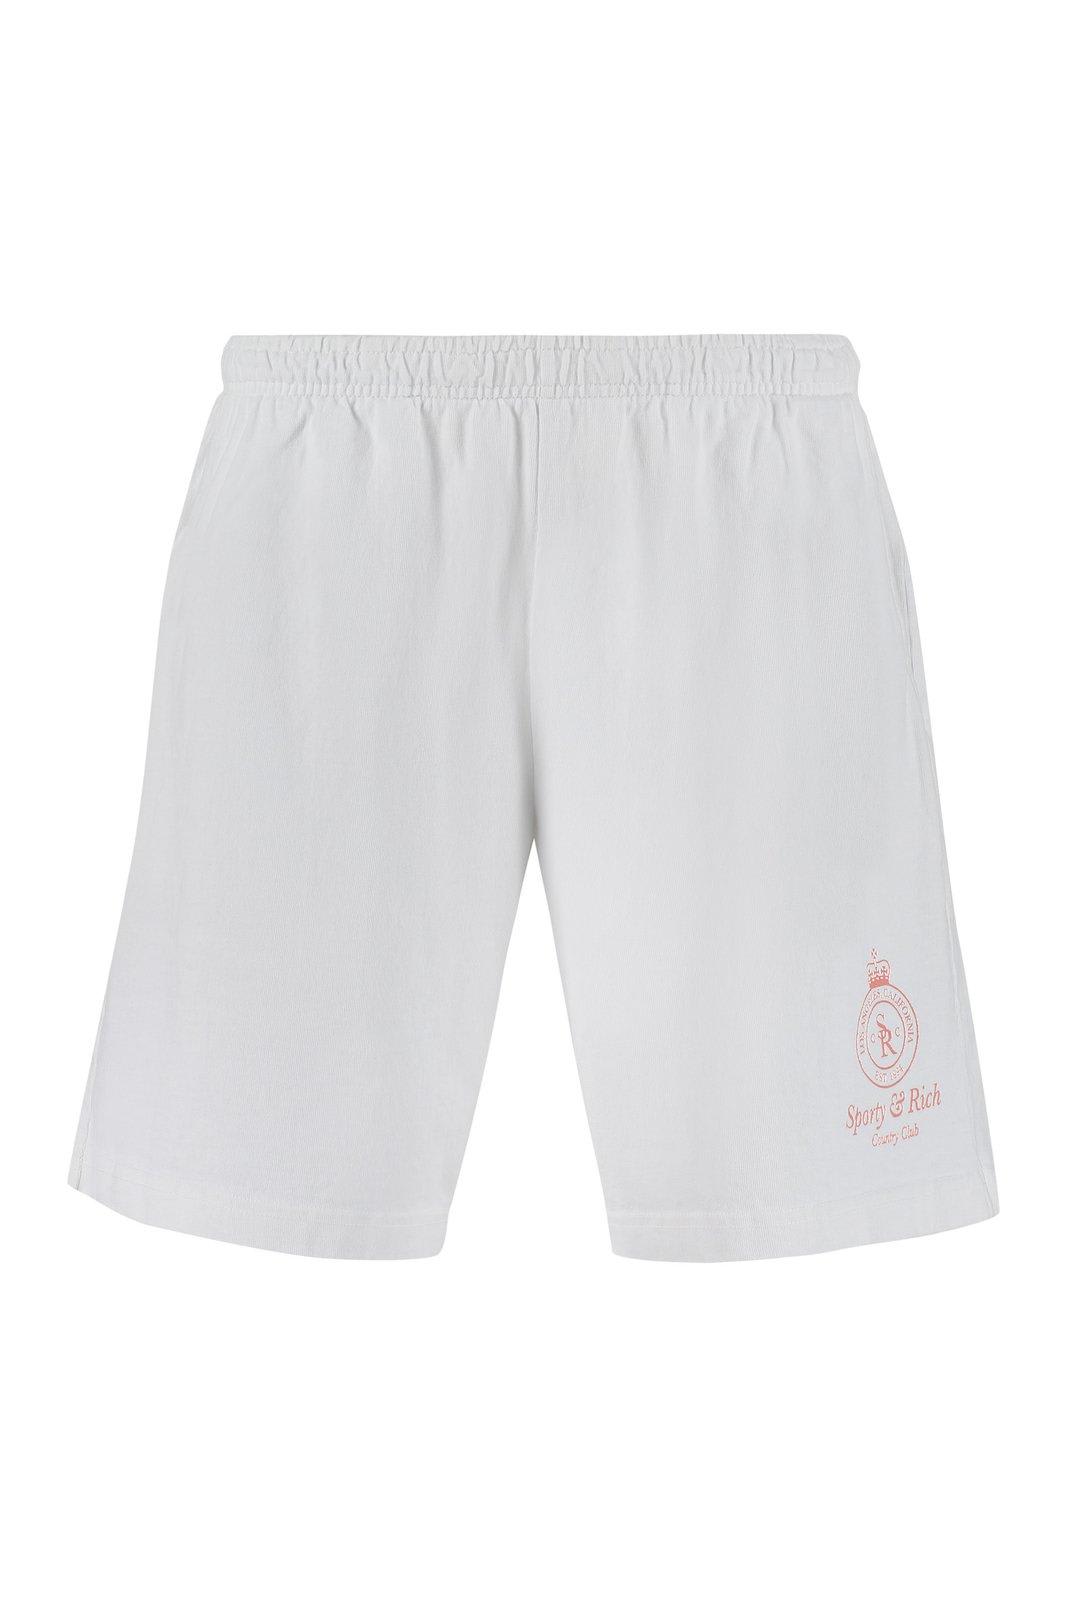 Sporty & Rich Bermuda Logo-print Shorts